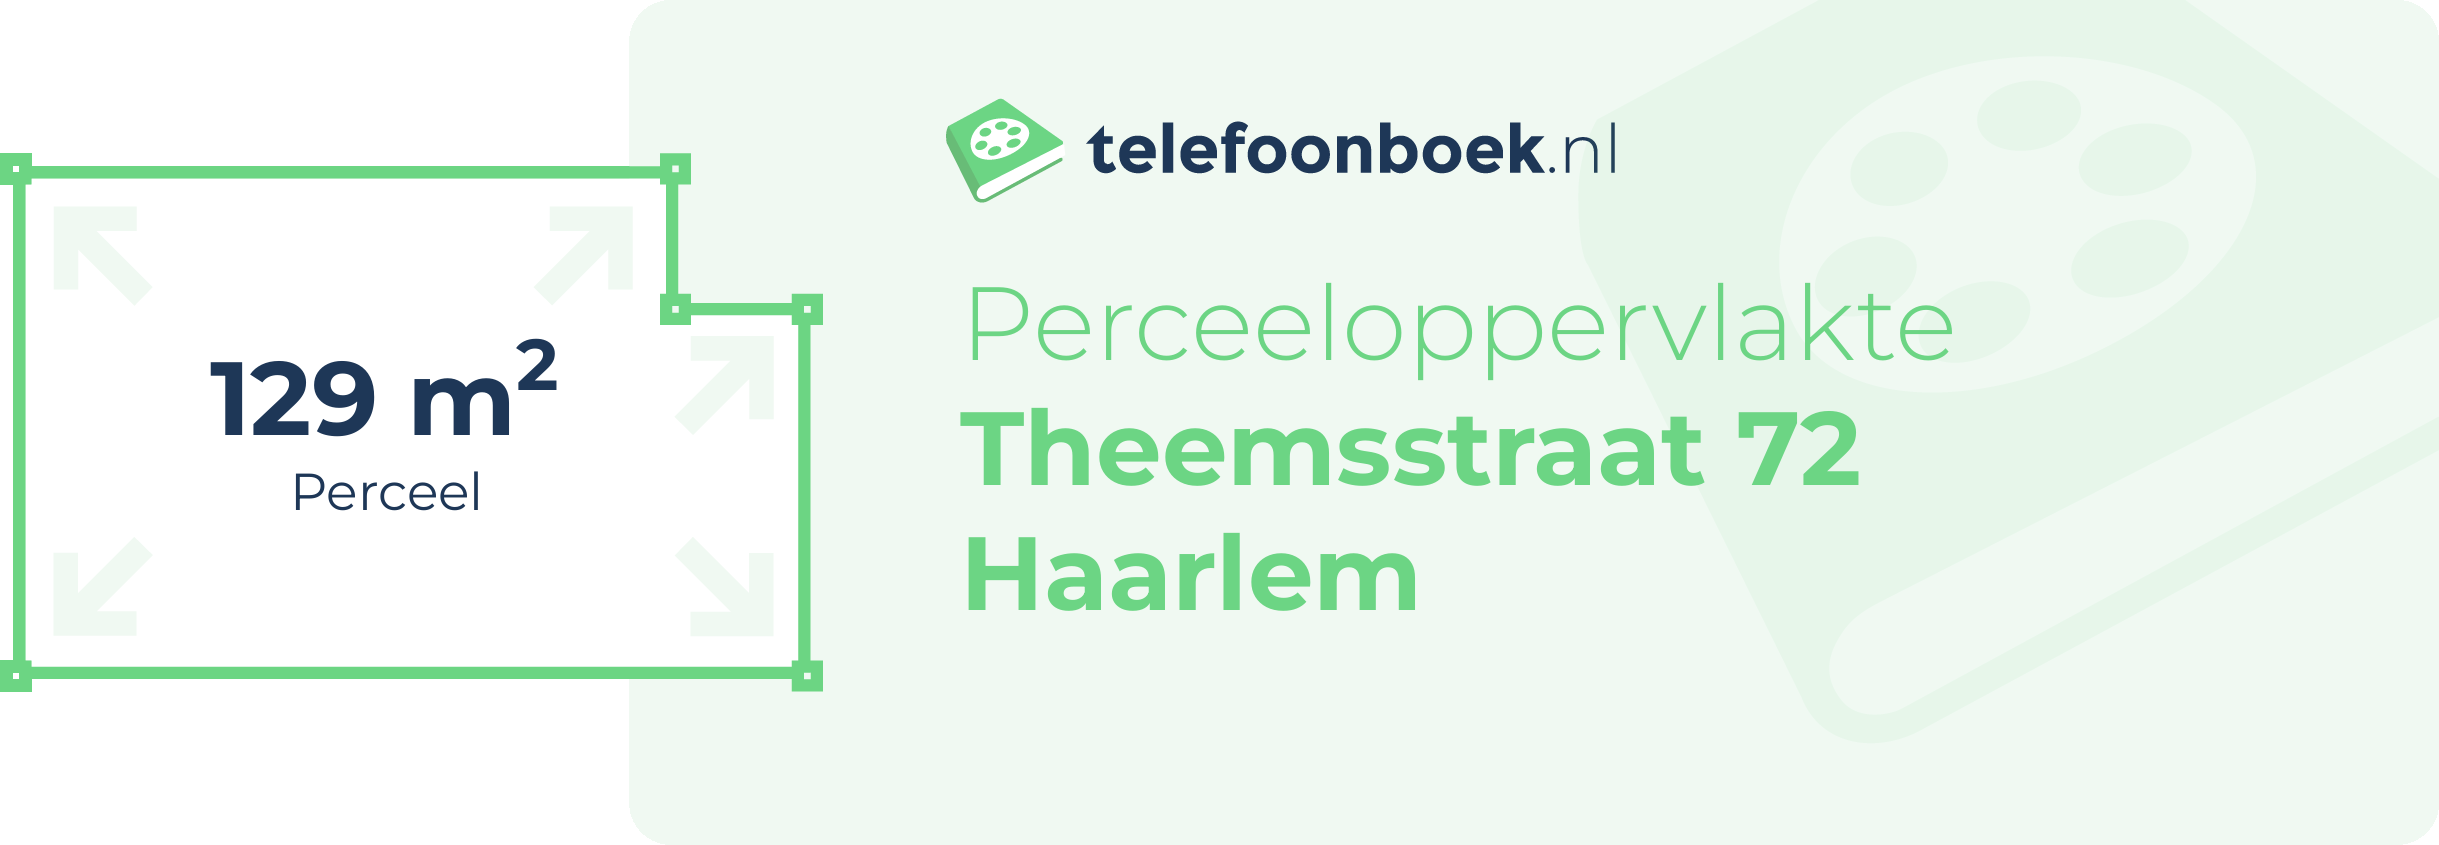 Perceeloppervlakte Theemsstraat 72 Haarlem